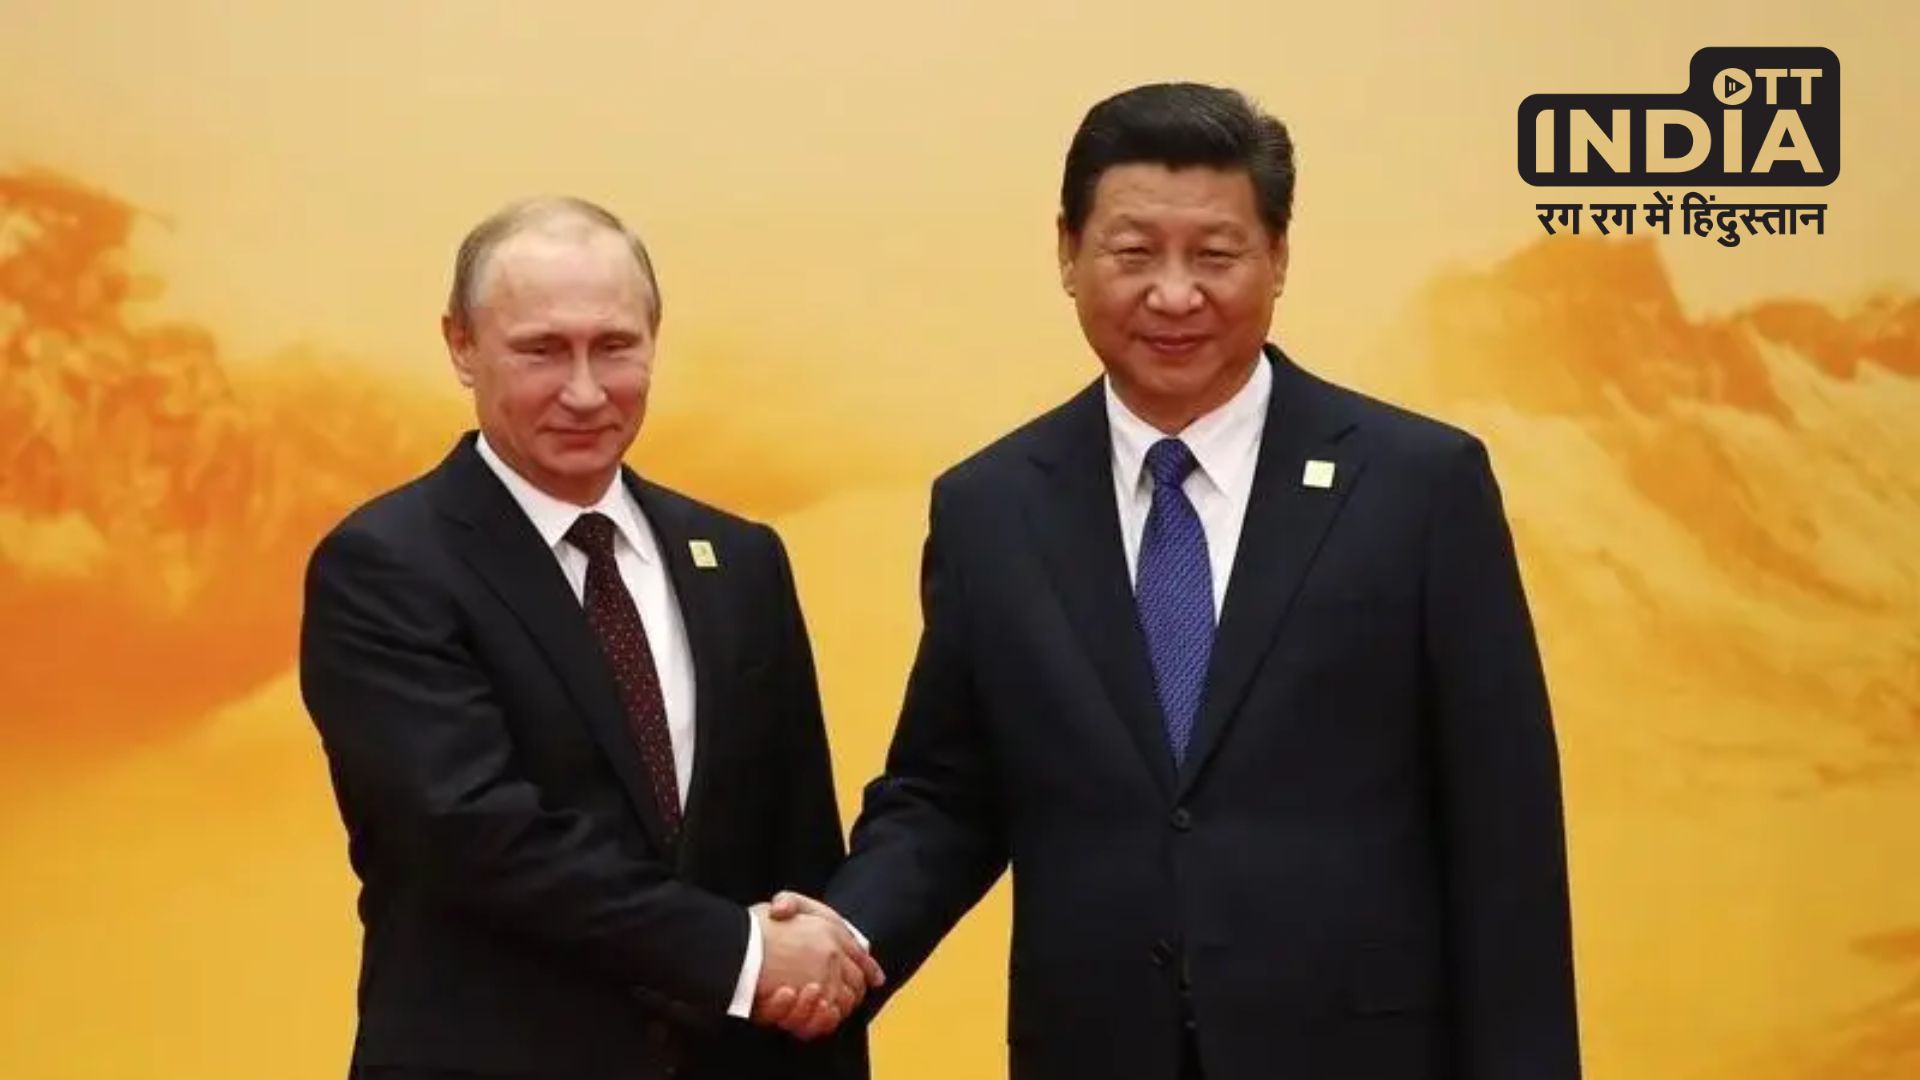 G20 Summit News : चीन के राष्ट्रपति शी जिनपिंग जी-20 सम्मेलन में नहीं होंगे शामिल, यह मंत्री करेगा प्रतिनिधित्व…